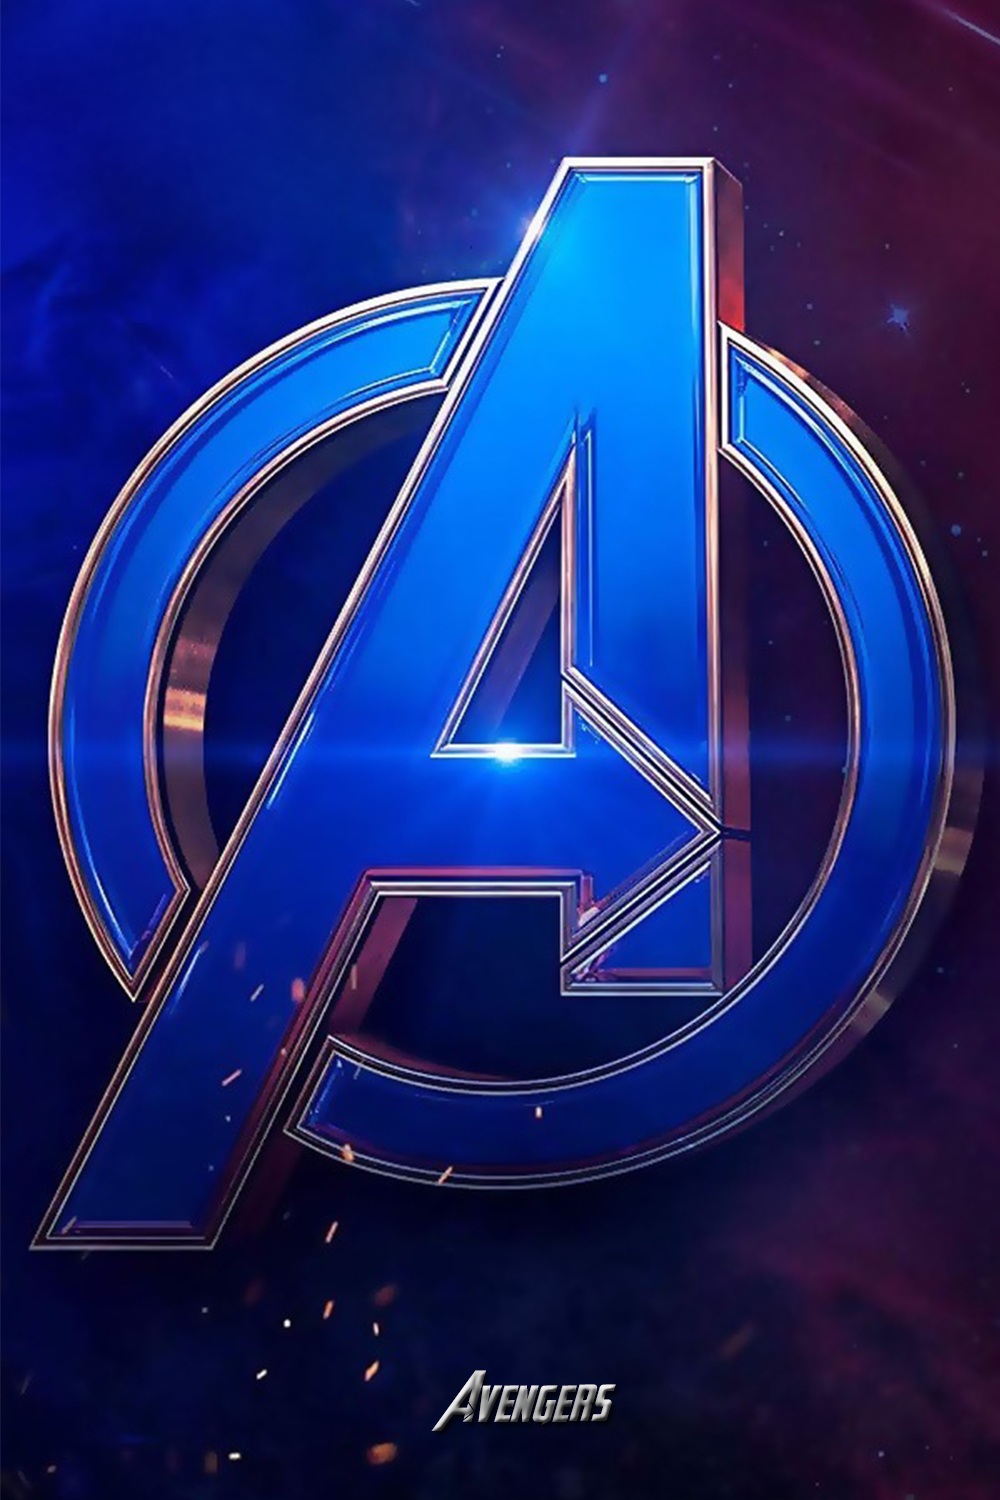 avengers logo Wallpaper iphone. Avengers wallpaper, Marvel wallpaper hd, Marvel comics wallpaper